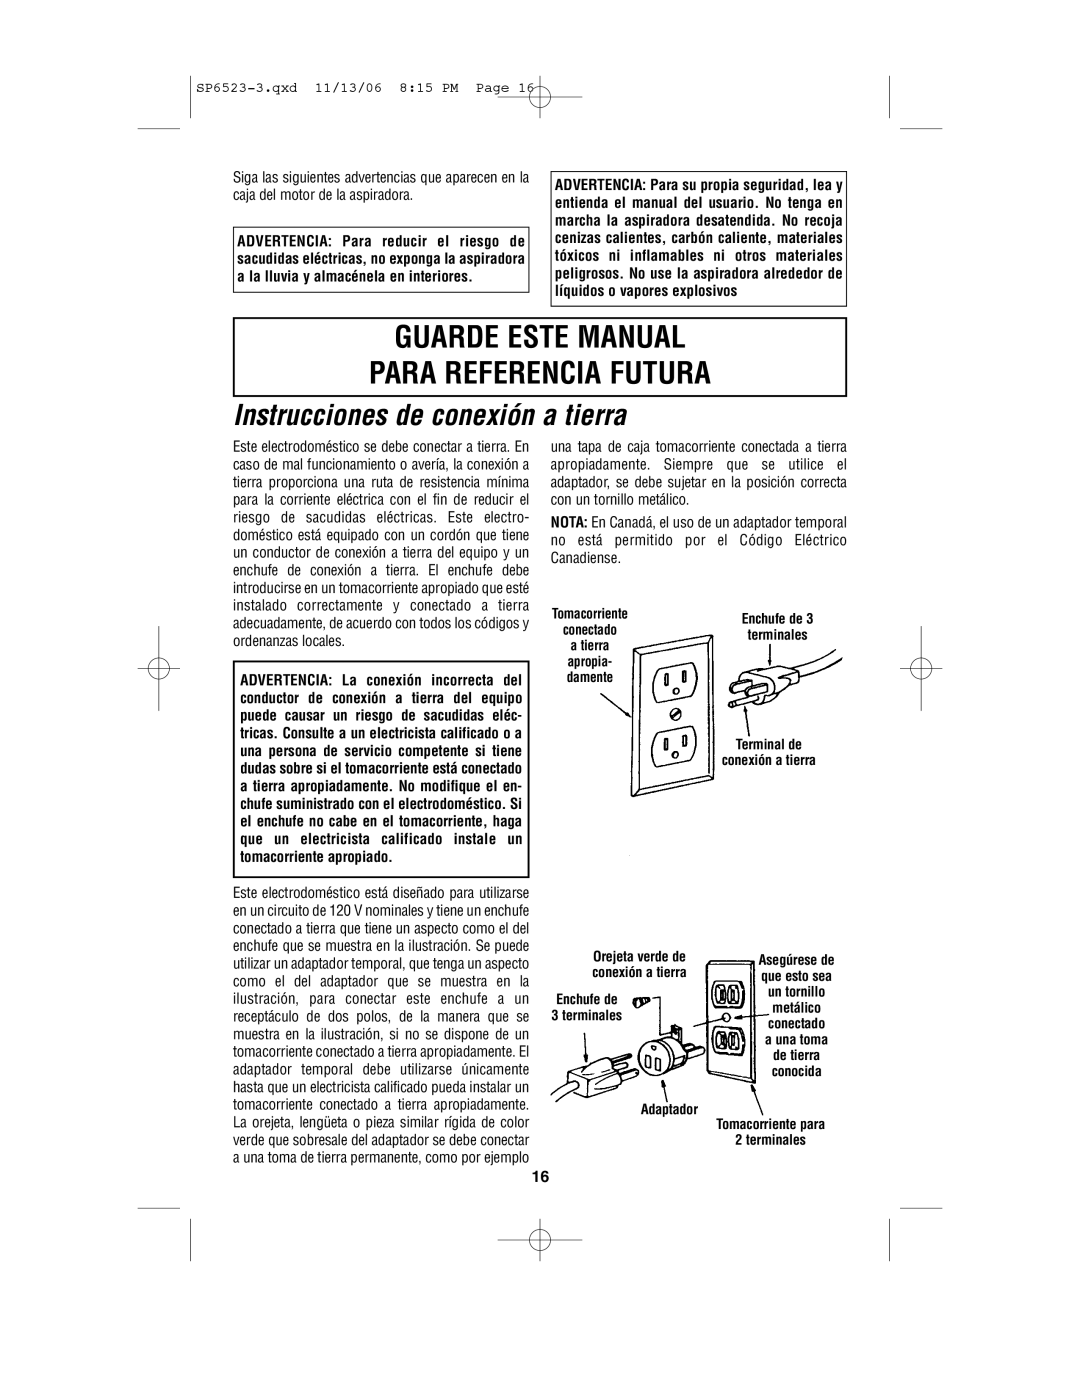 Craftsman 113.177135 owner manual Guarde Este Manual Para Referencia Futura, Instrucciones de conexión a tierra 